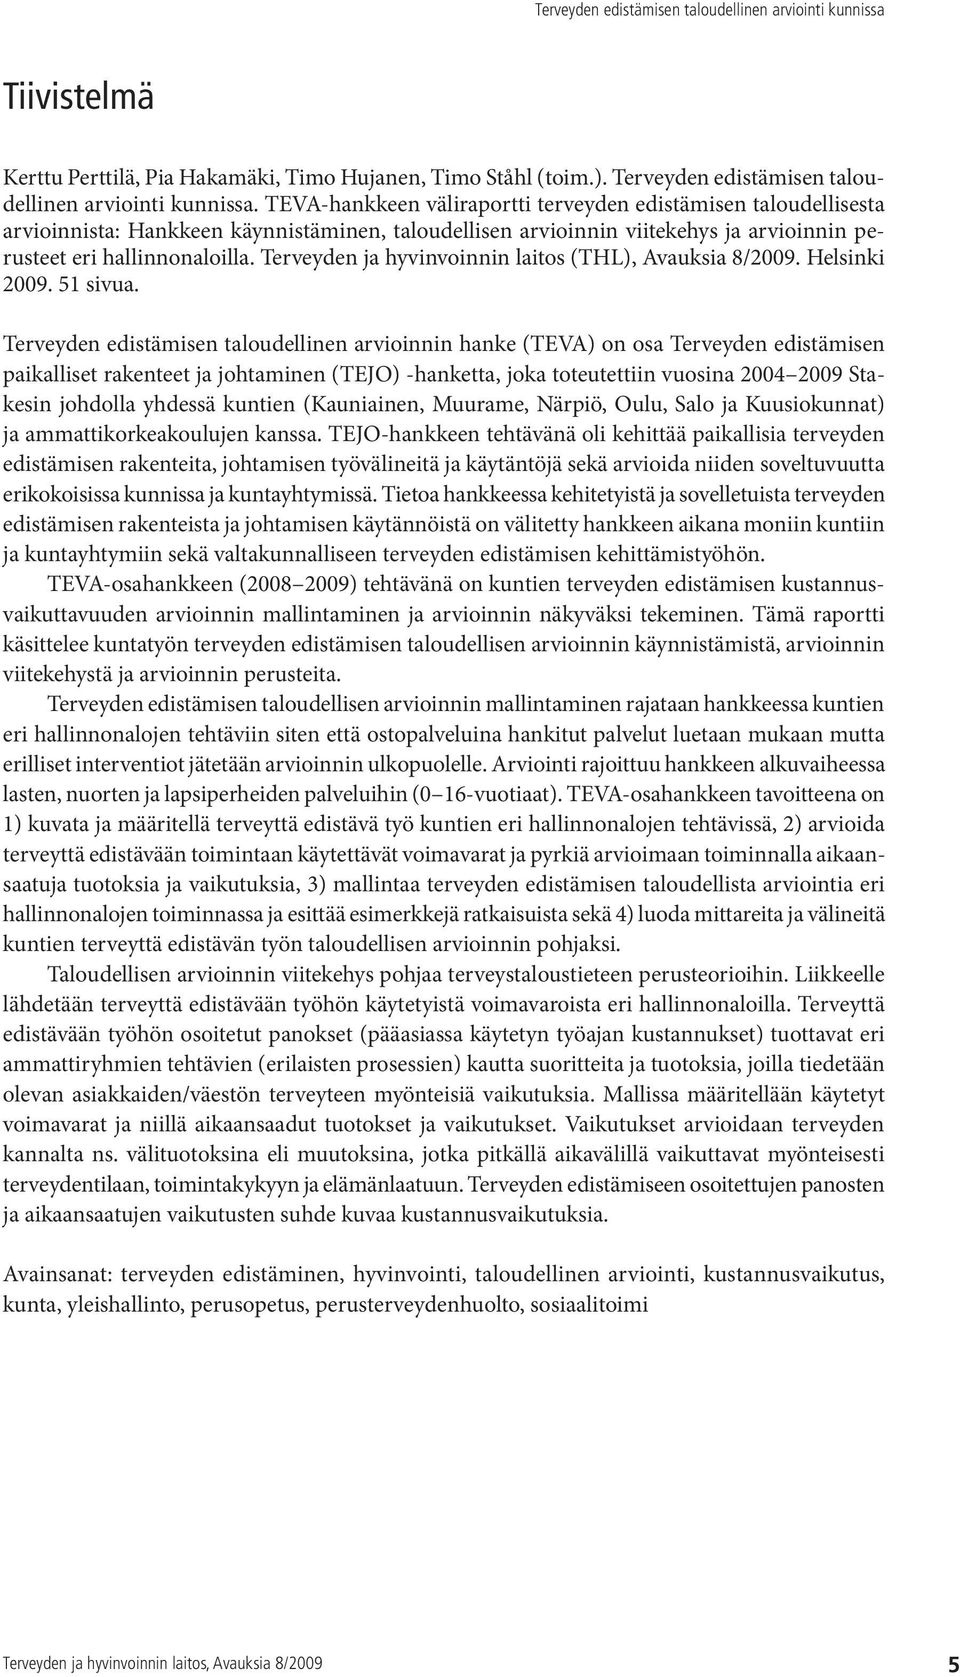 Terveyden ja hyvinvoinnin laitos (THL), Avauksia 8/2009. Helsinki 2009. 51 sivua.